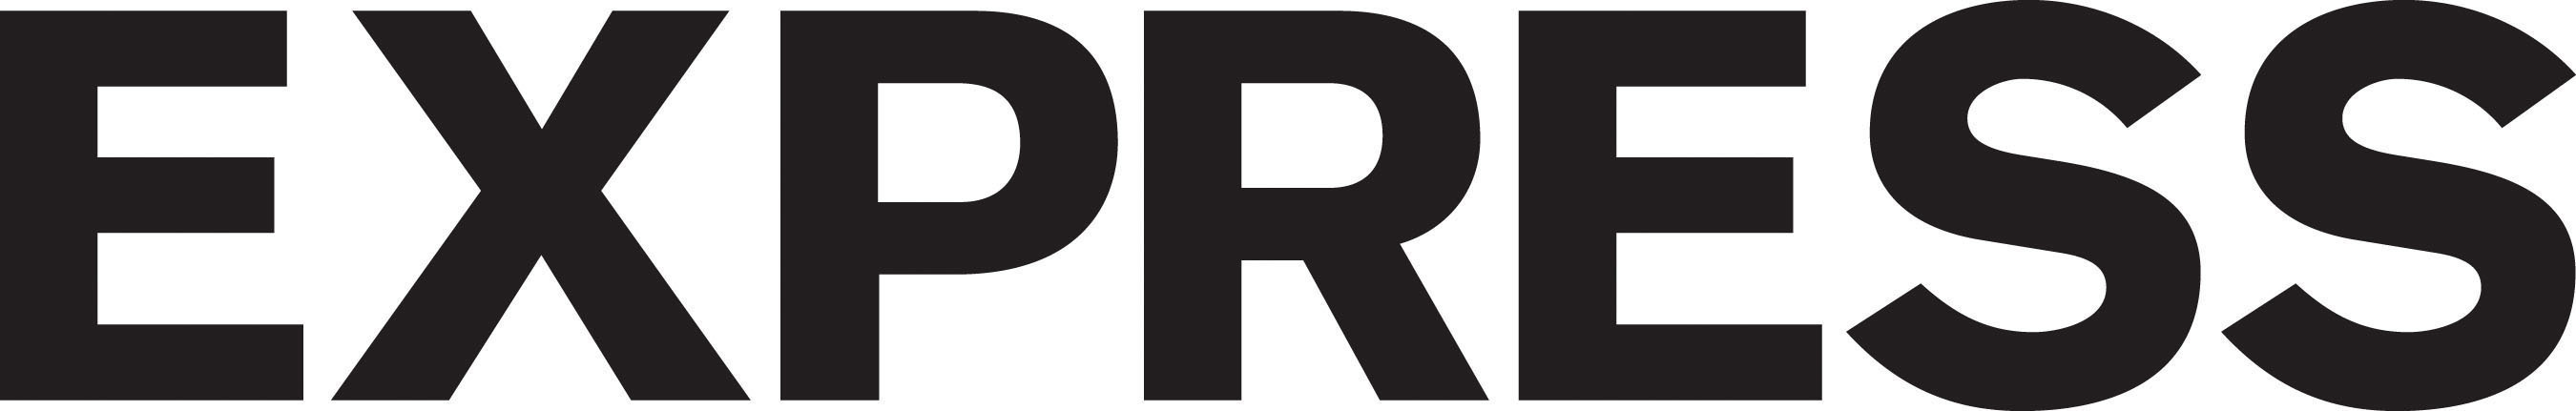 EXPRESS Logo. (PRNewsFoto/EXPRESS) (PRNewsFoto/EXPRESS)